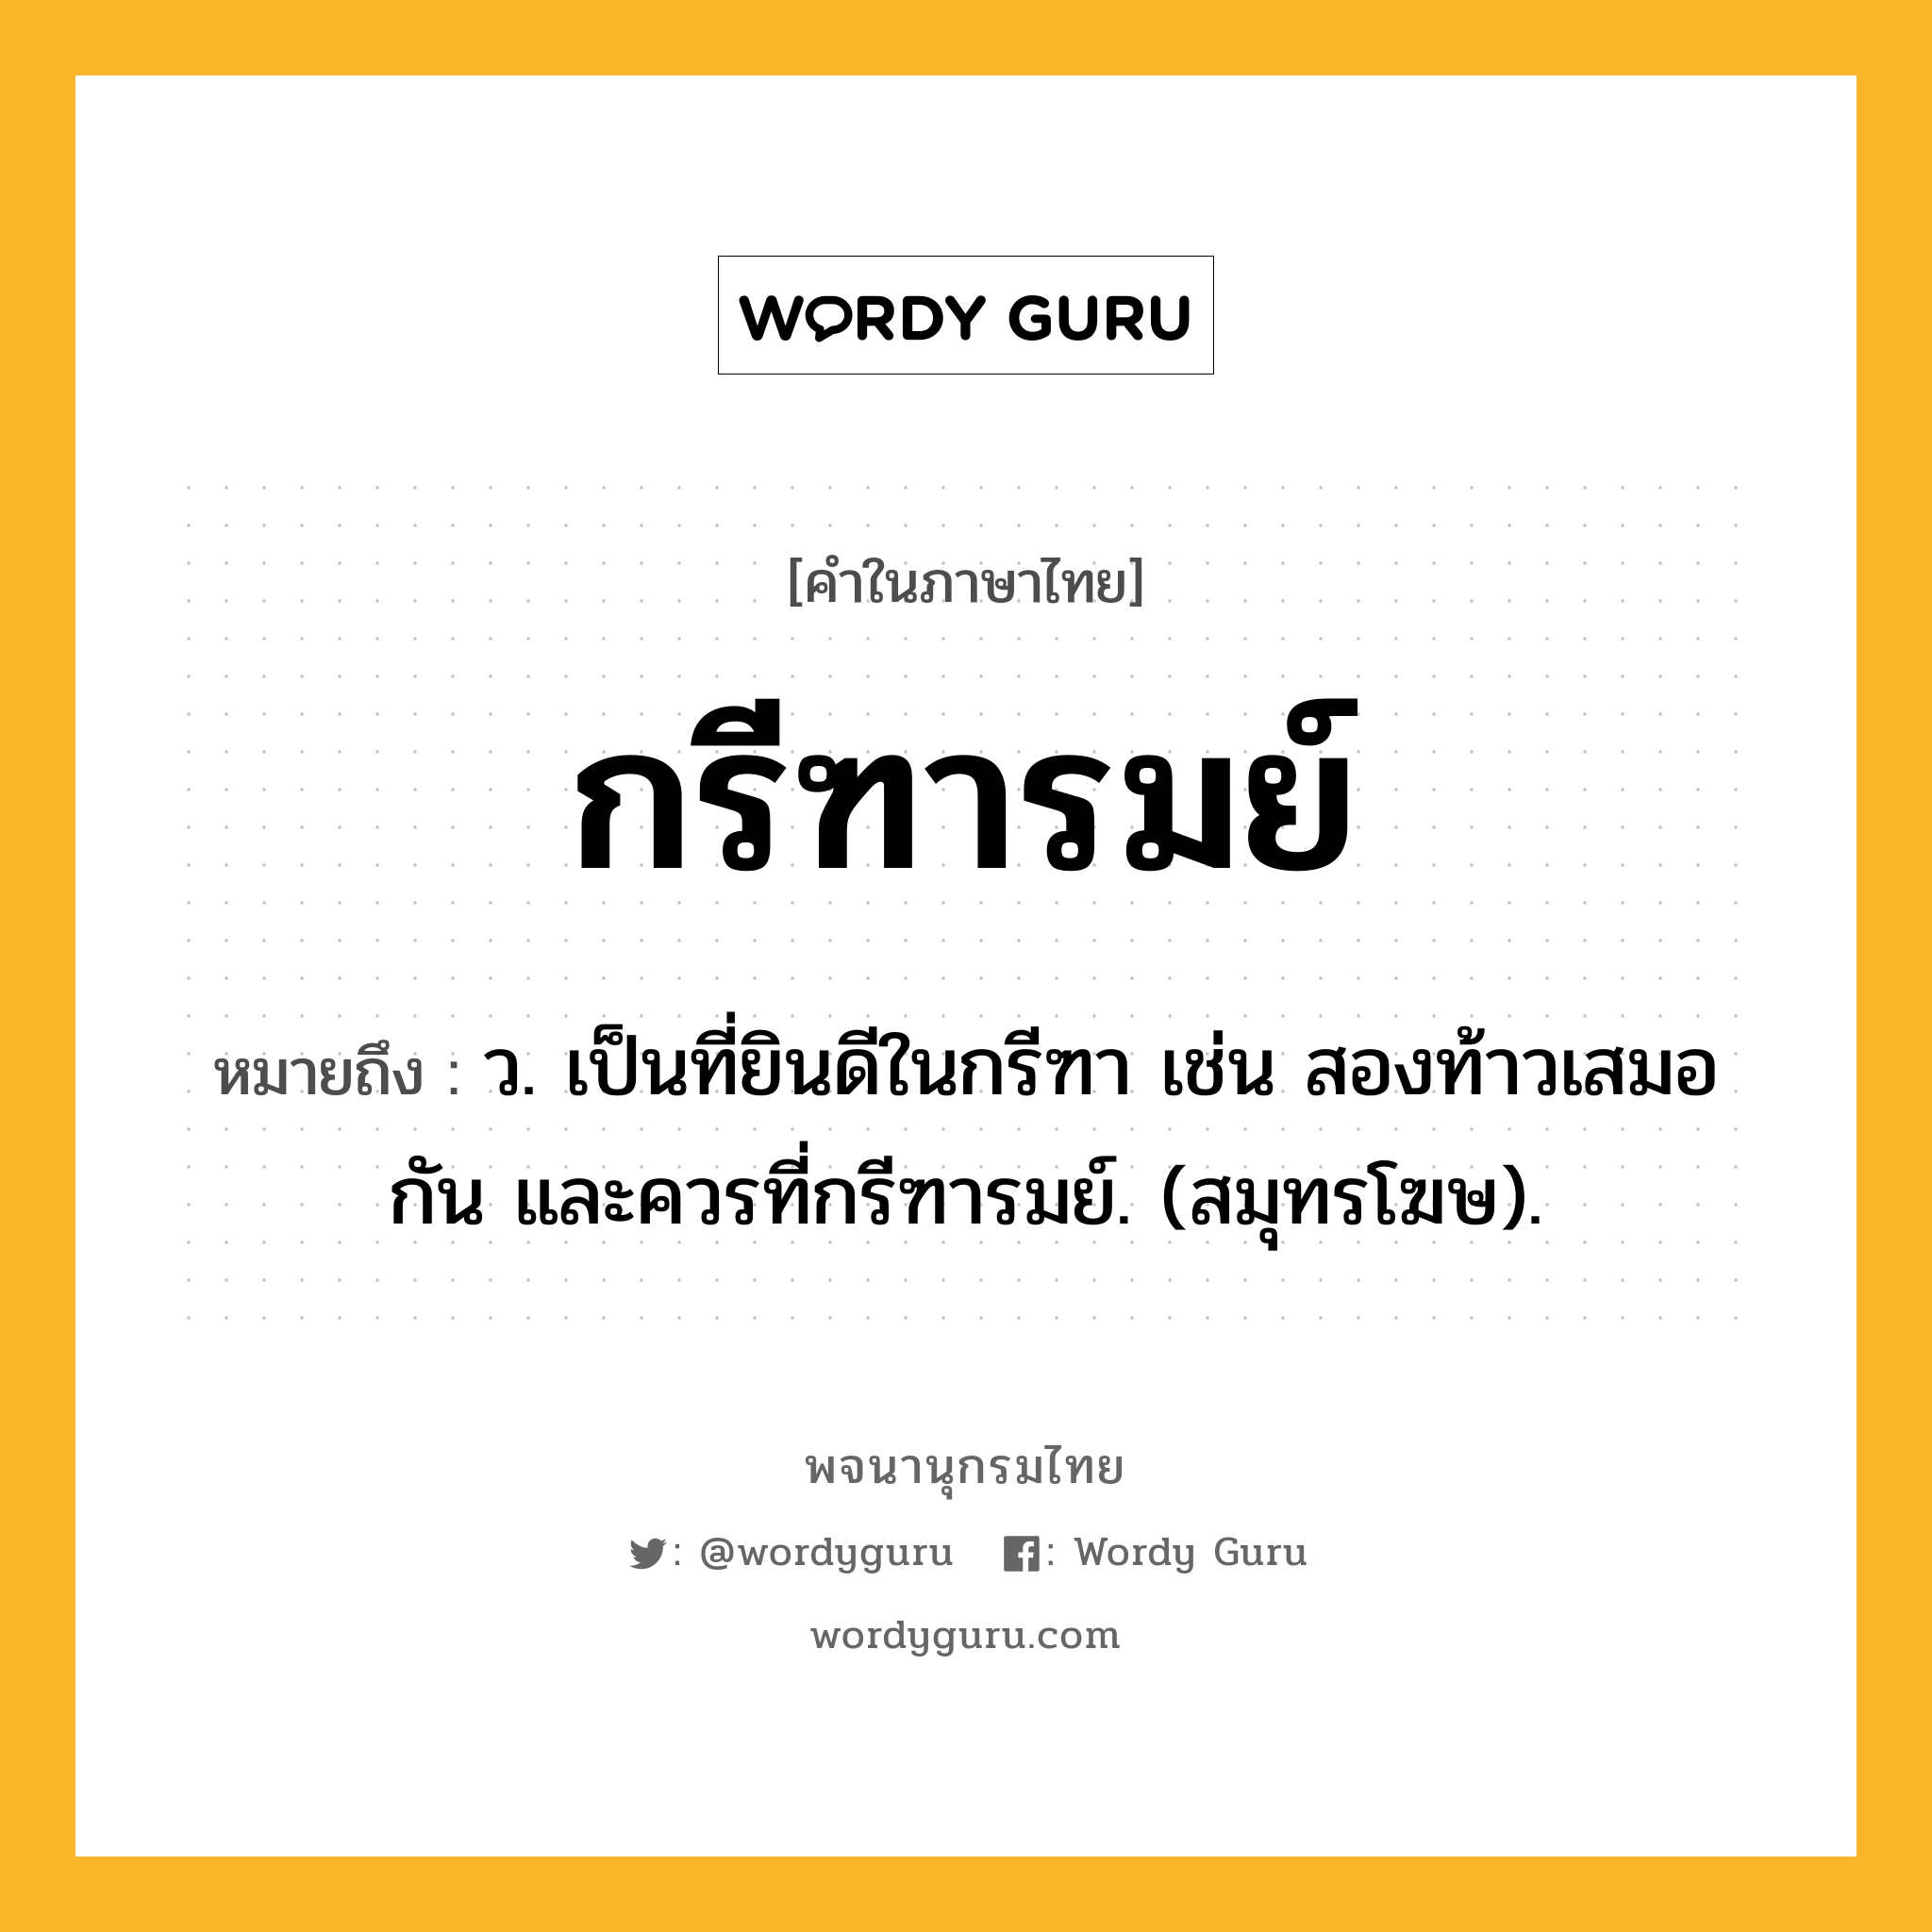 กรีฑารมย์ ความหมาย หมายถึงอะไร?, คำในภาษาไทย กรีฑารมย์ หมายถึง ว. เป็นที่ยินดีในกรีฑา เช่น สองท้าวเสมอกัน และควรที่กรีฑารมย์. (สมุทรโฆษ).